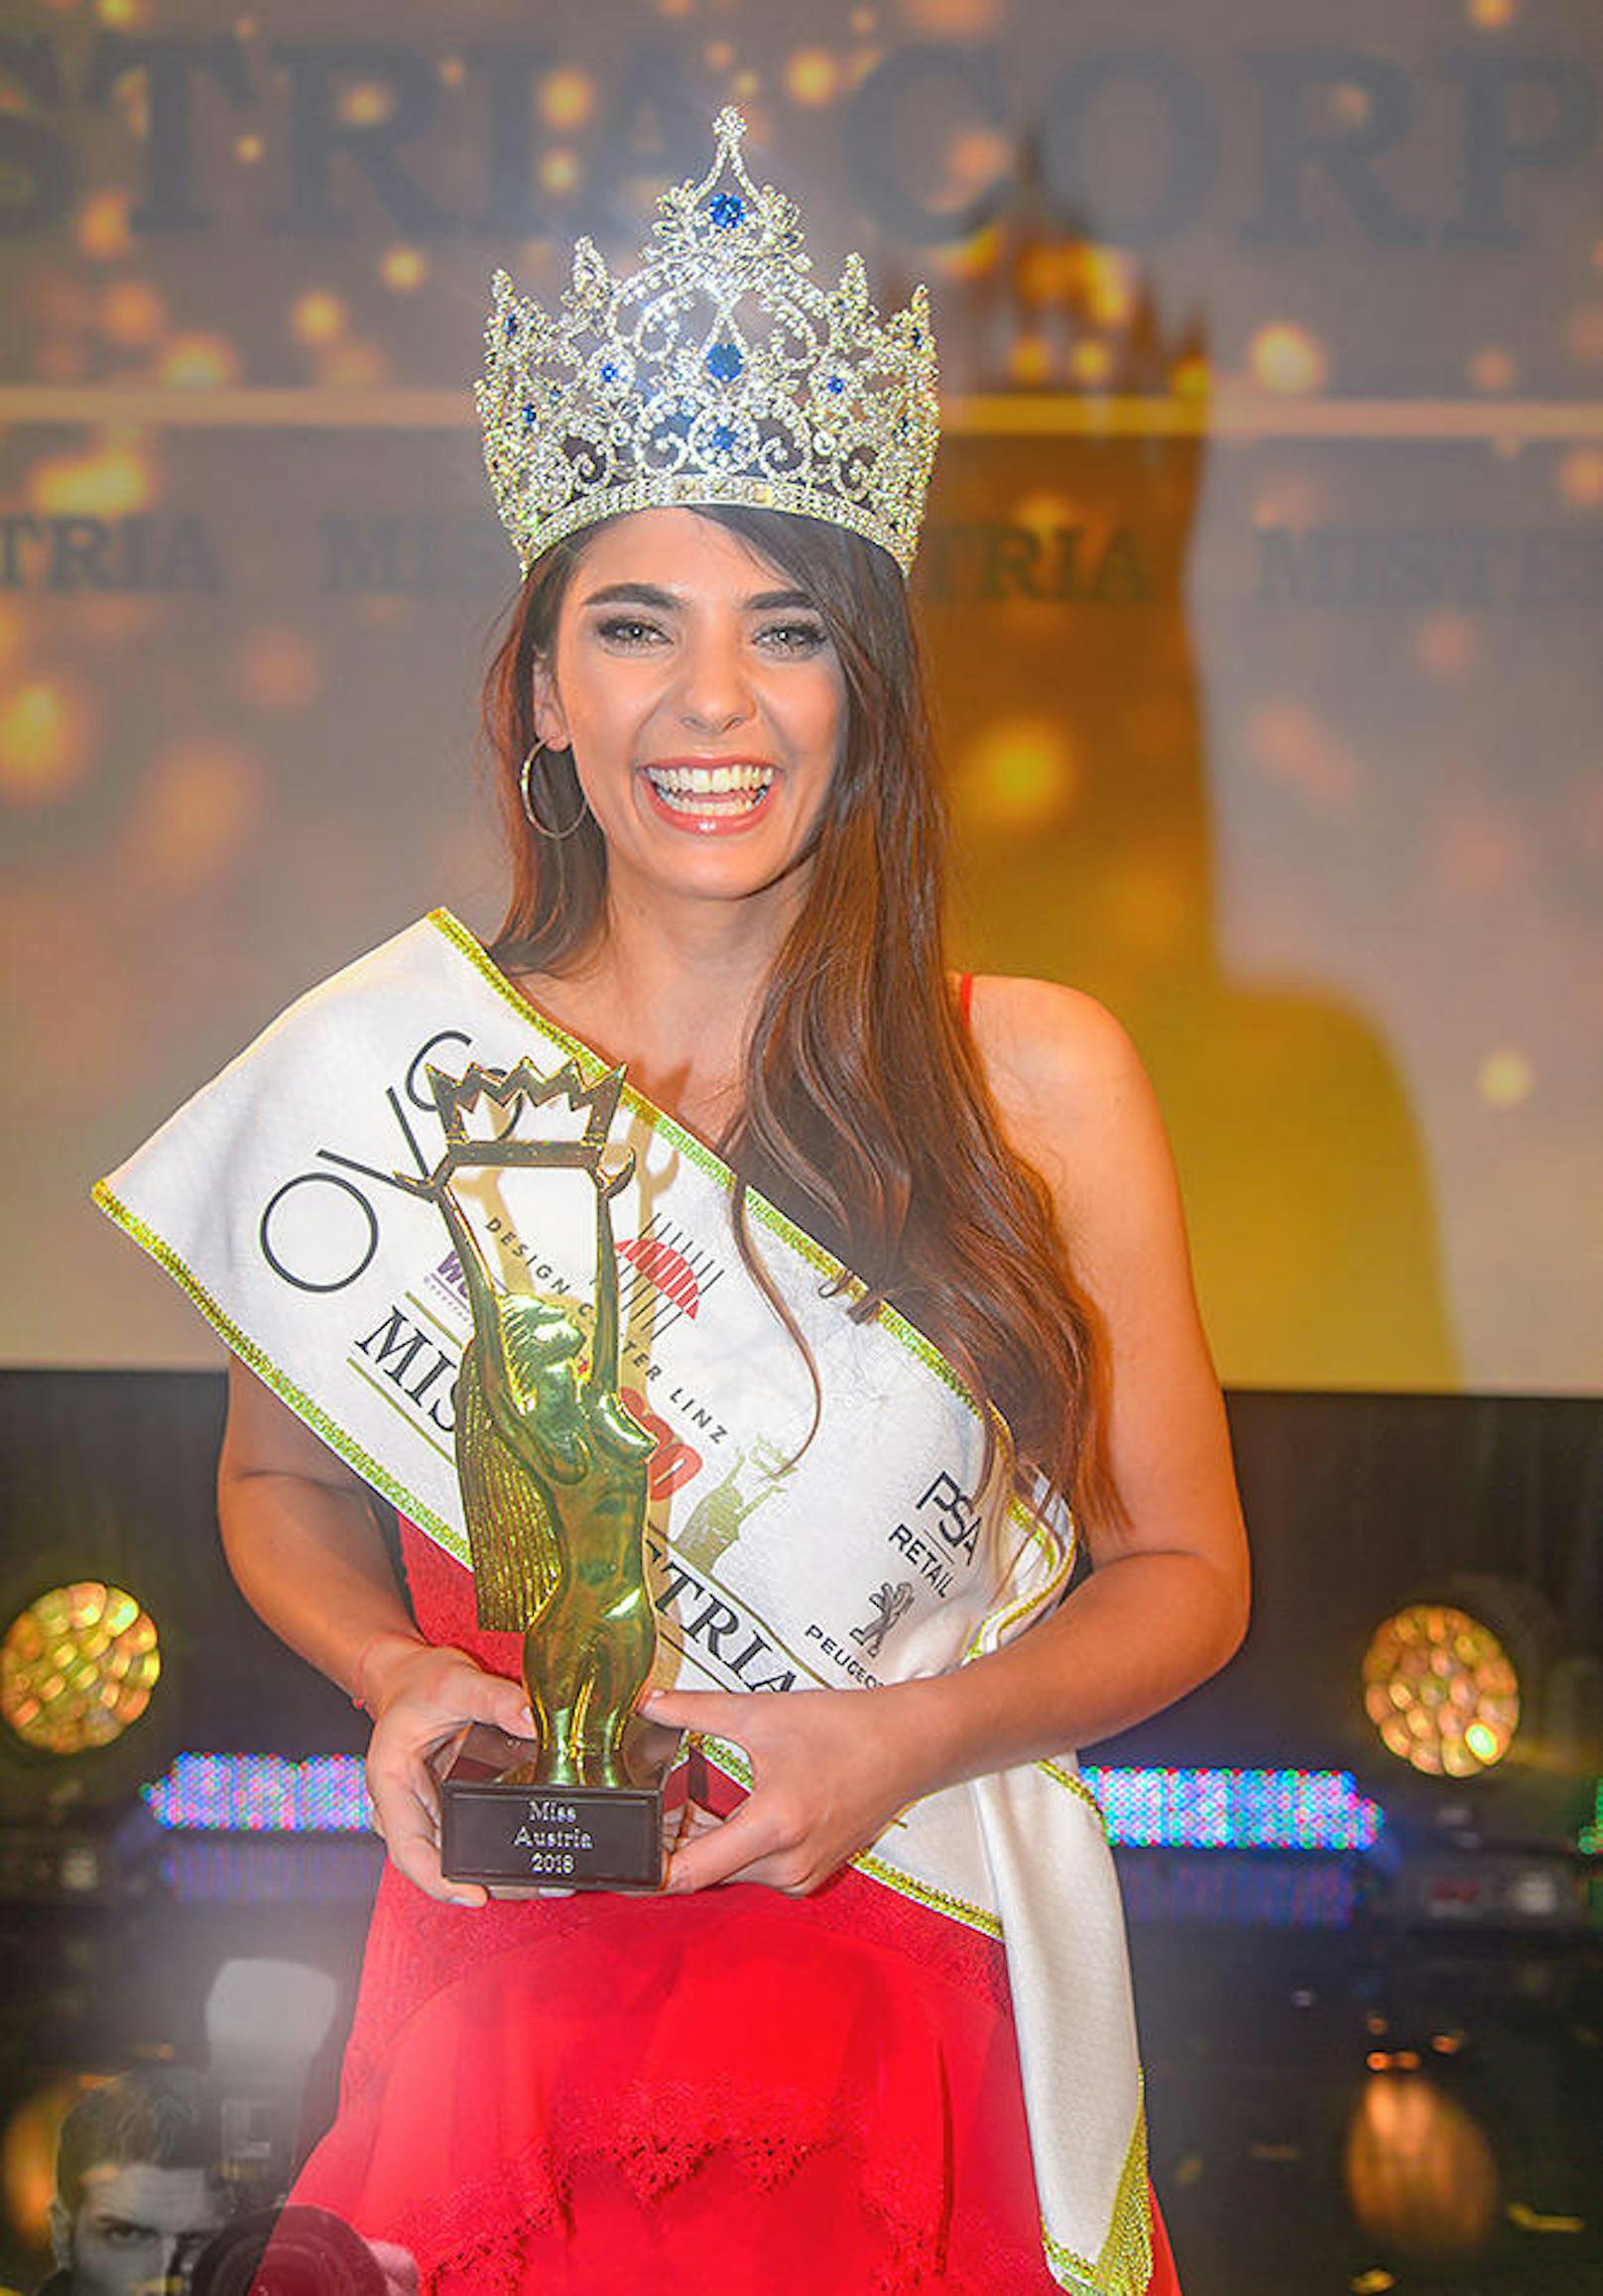 Ihr erstes strahlendes Lächeln als neue Miss Austria 2018: Daniela Zivkov mit den Insignien ihres Titels: Trophäe, Schärpe, Krone